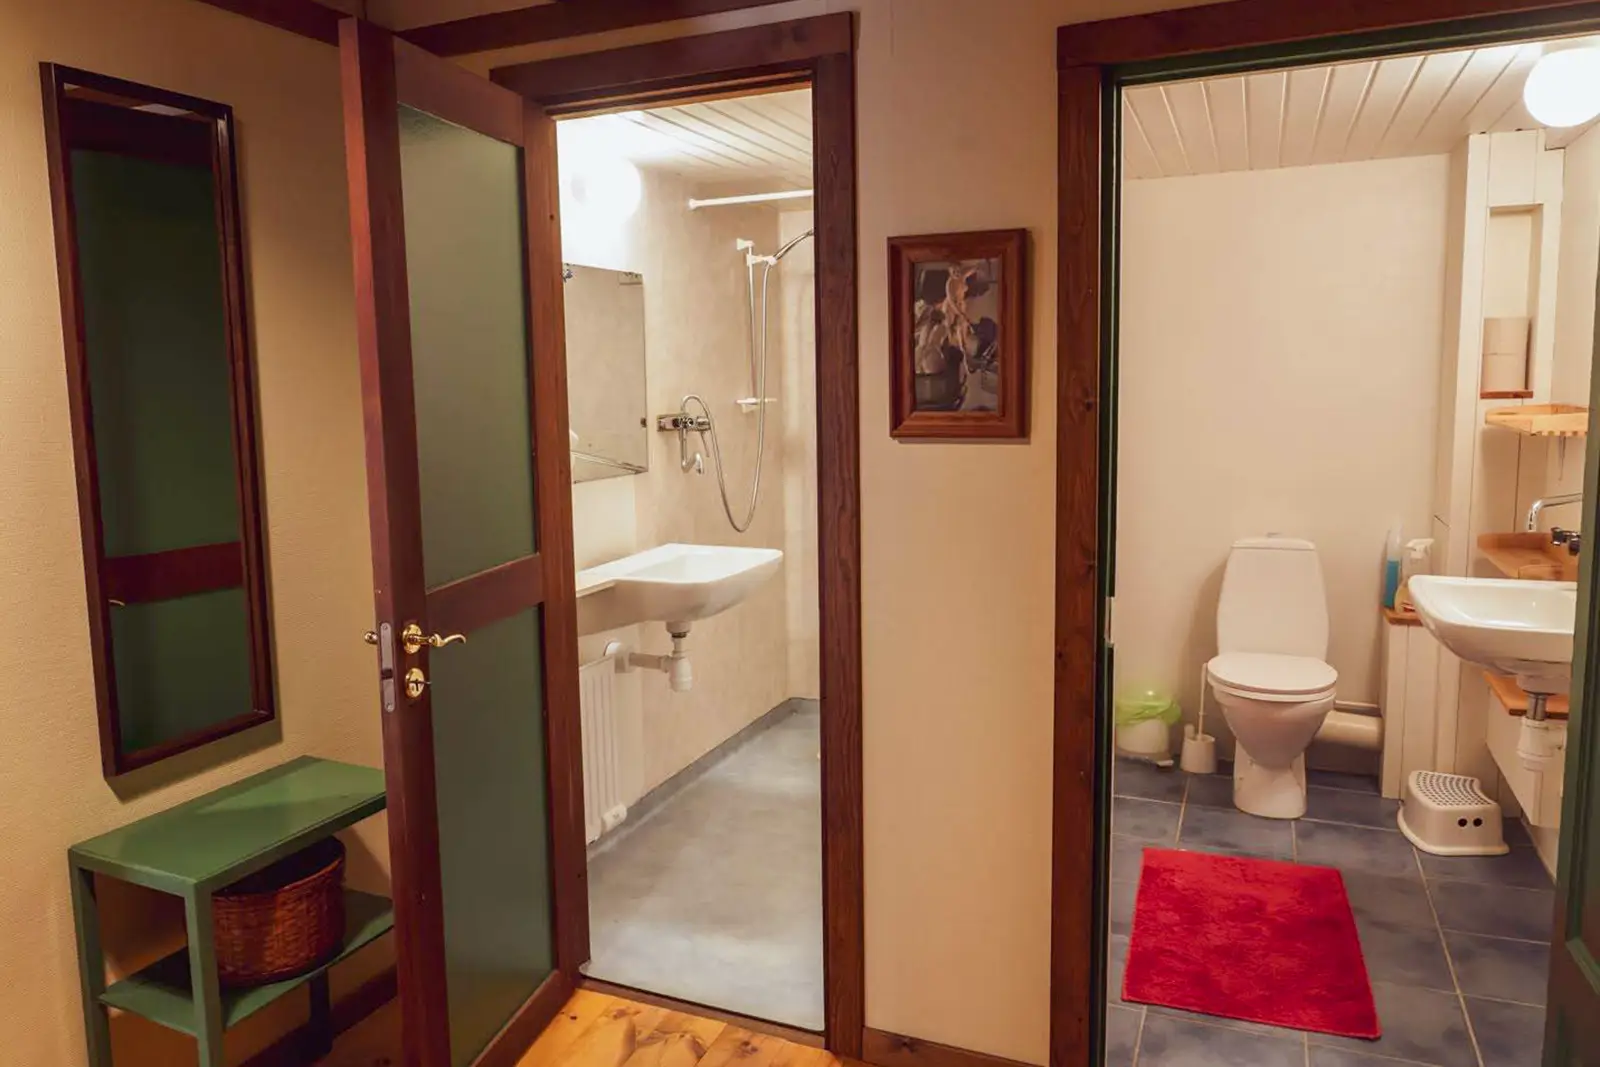 Eftersom dusch och toalett är i separata rum kan gäster använda båda samtidigt.